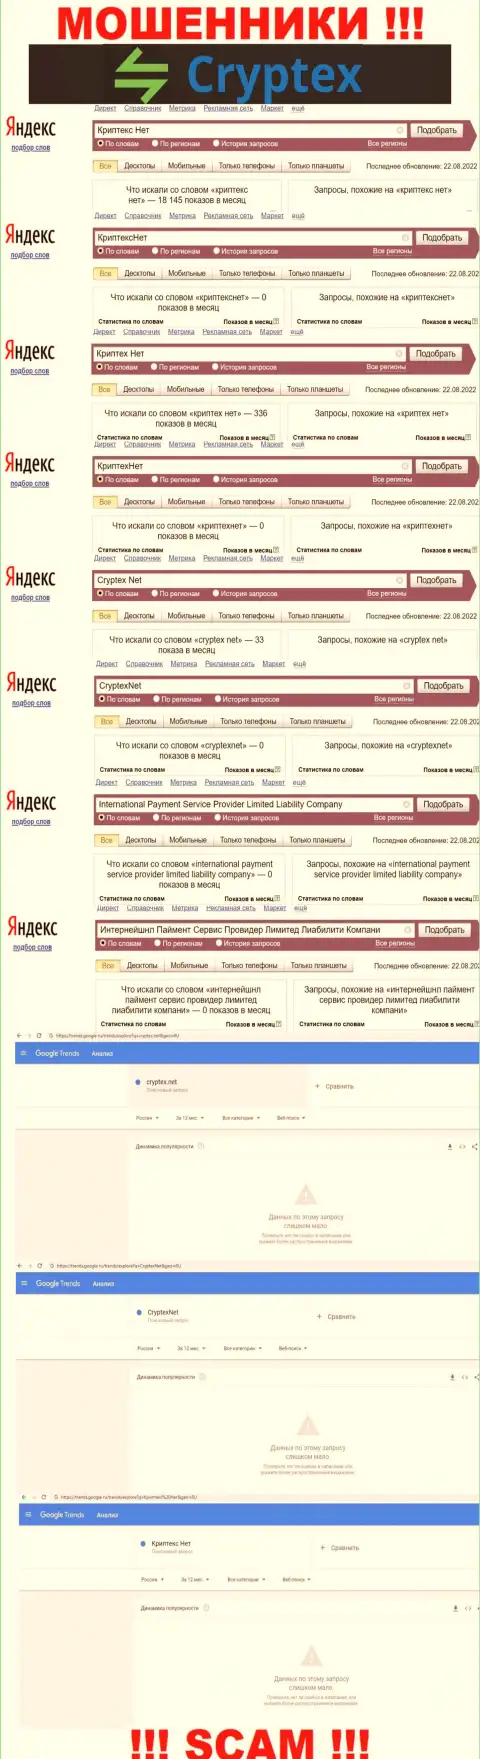 Скриншот итога поисковых запросов по противоправно действующей организации Интернейшнл Паймент Сервис Провидер Лимитед Лиабилити Компани